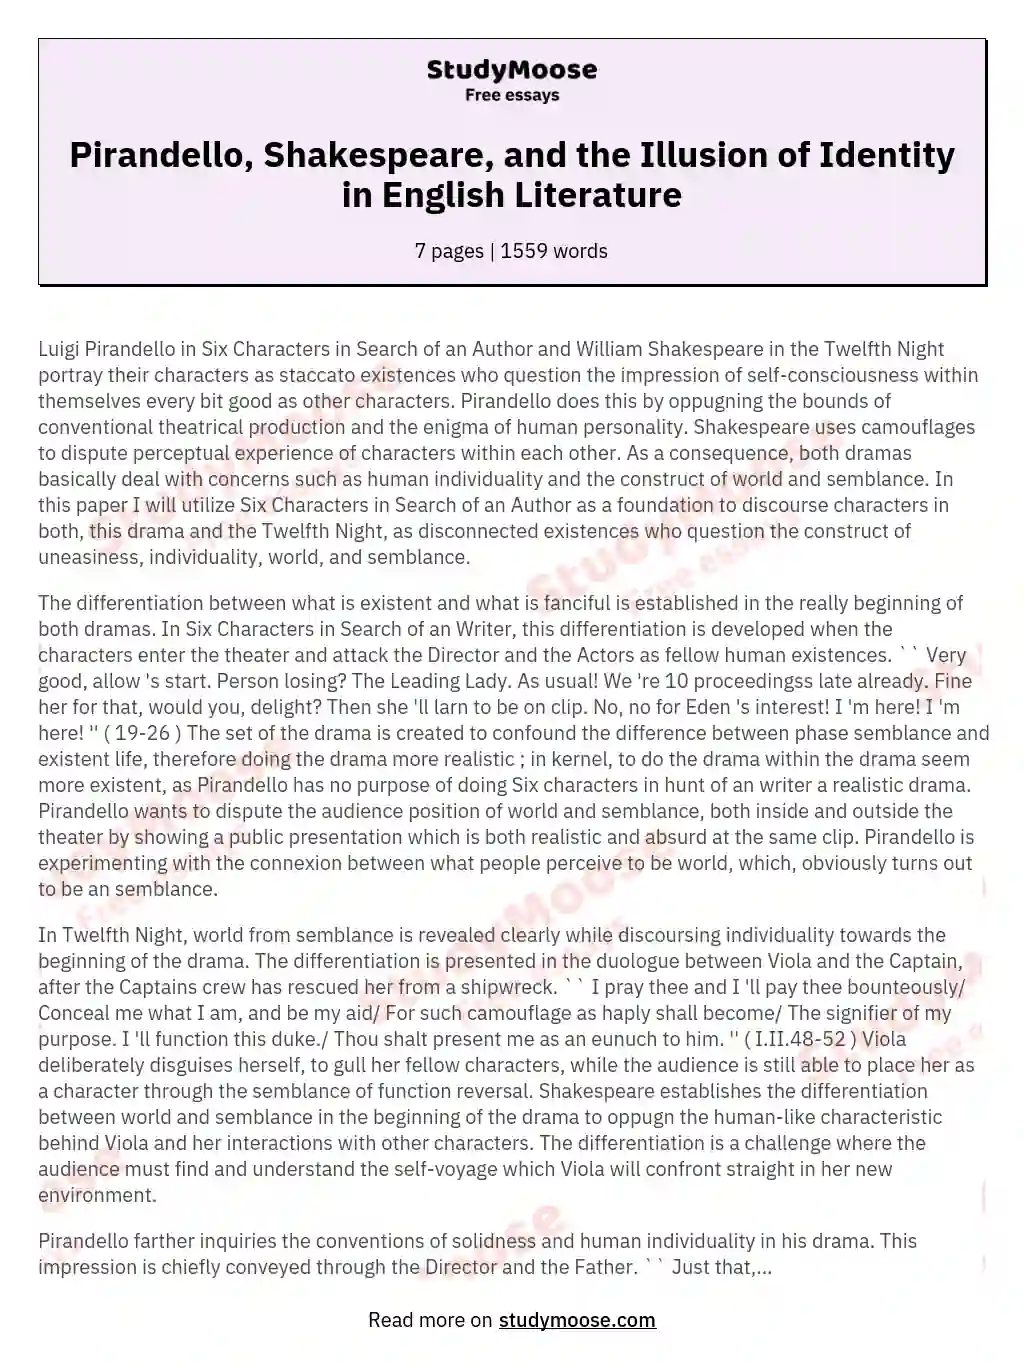 Pirandello, Shakespeare, and the Illusion of Identity in English Literature essay